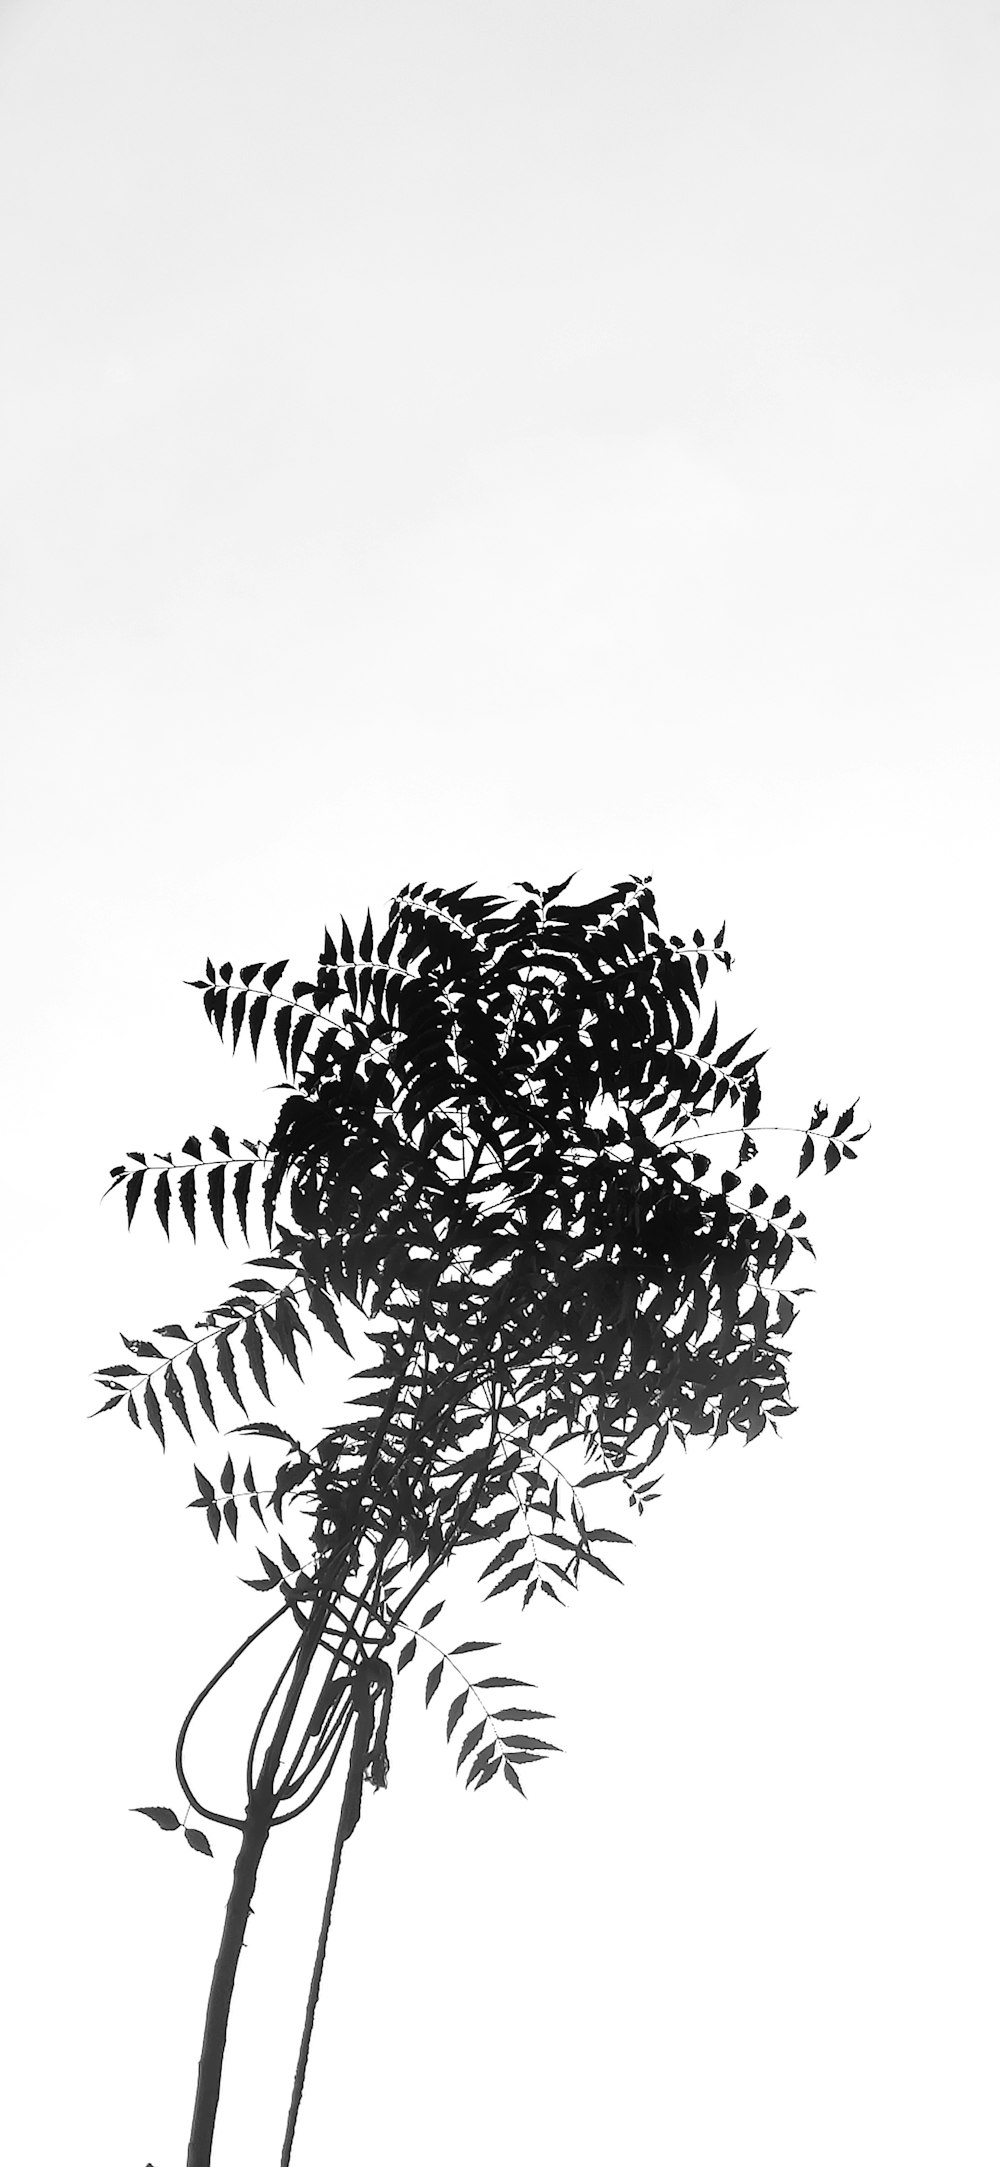 Une photo en noir et blanc d’un arbre